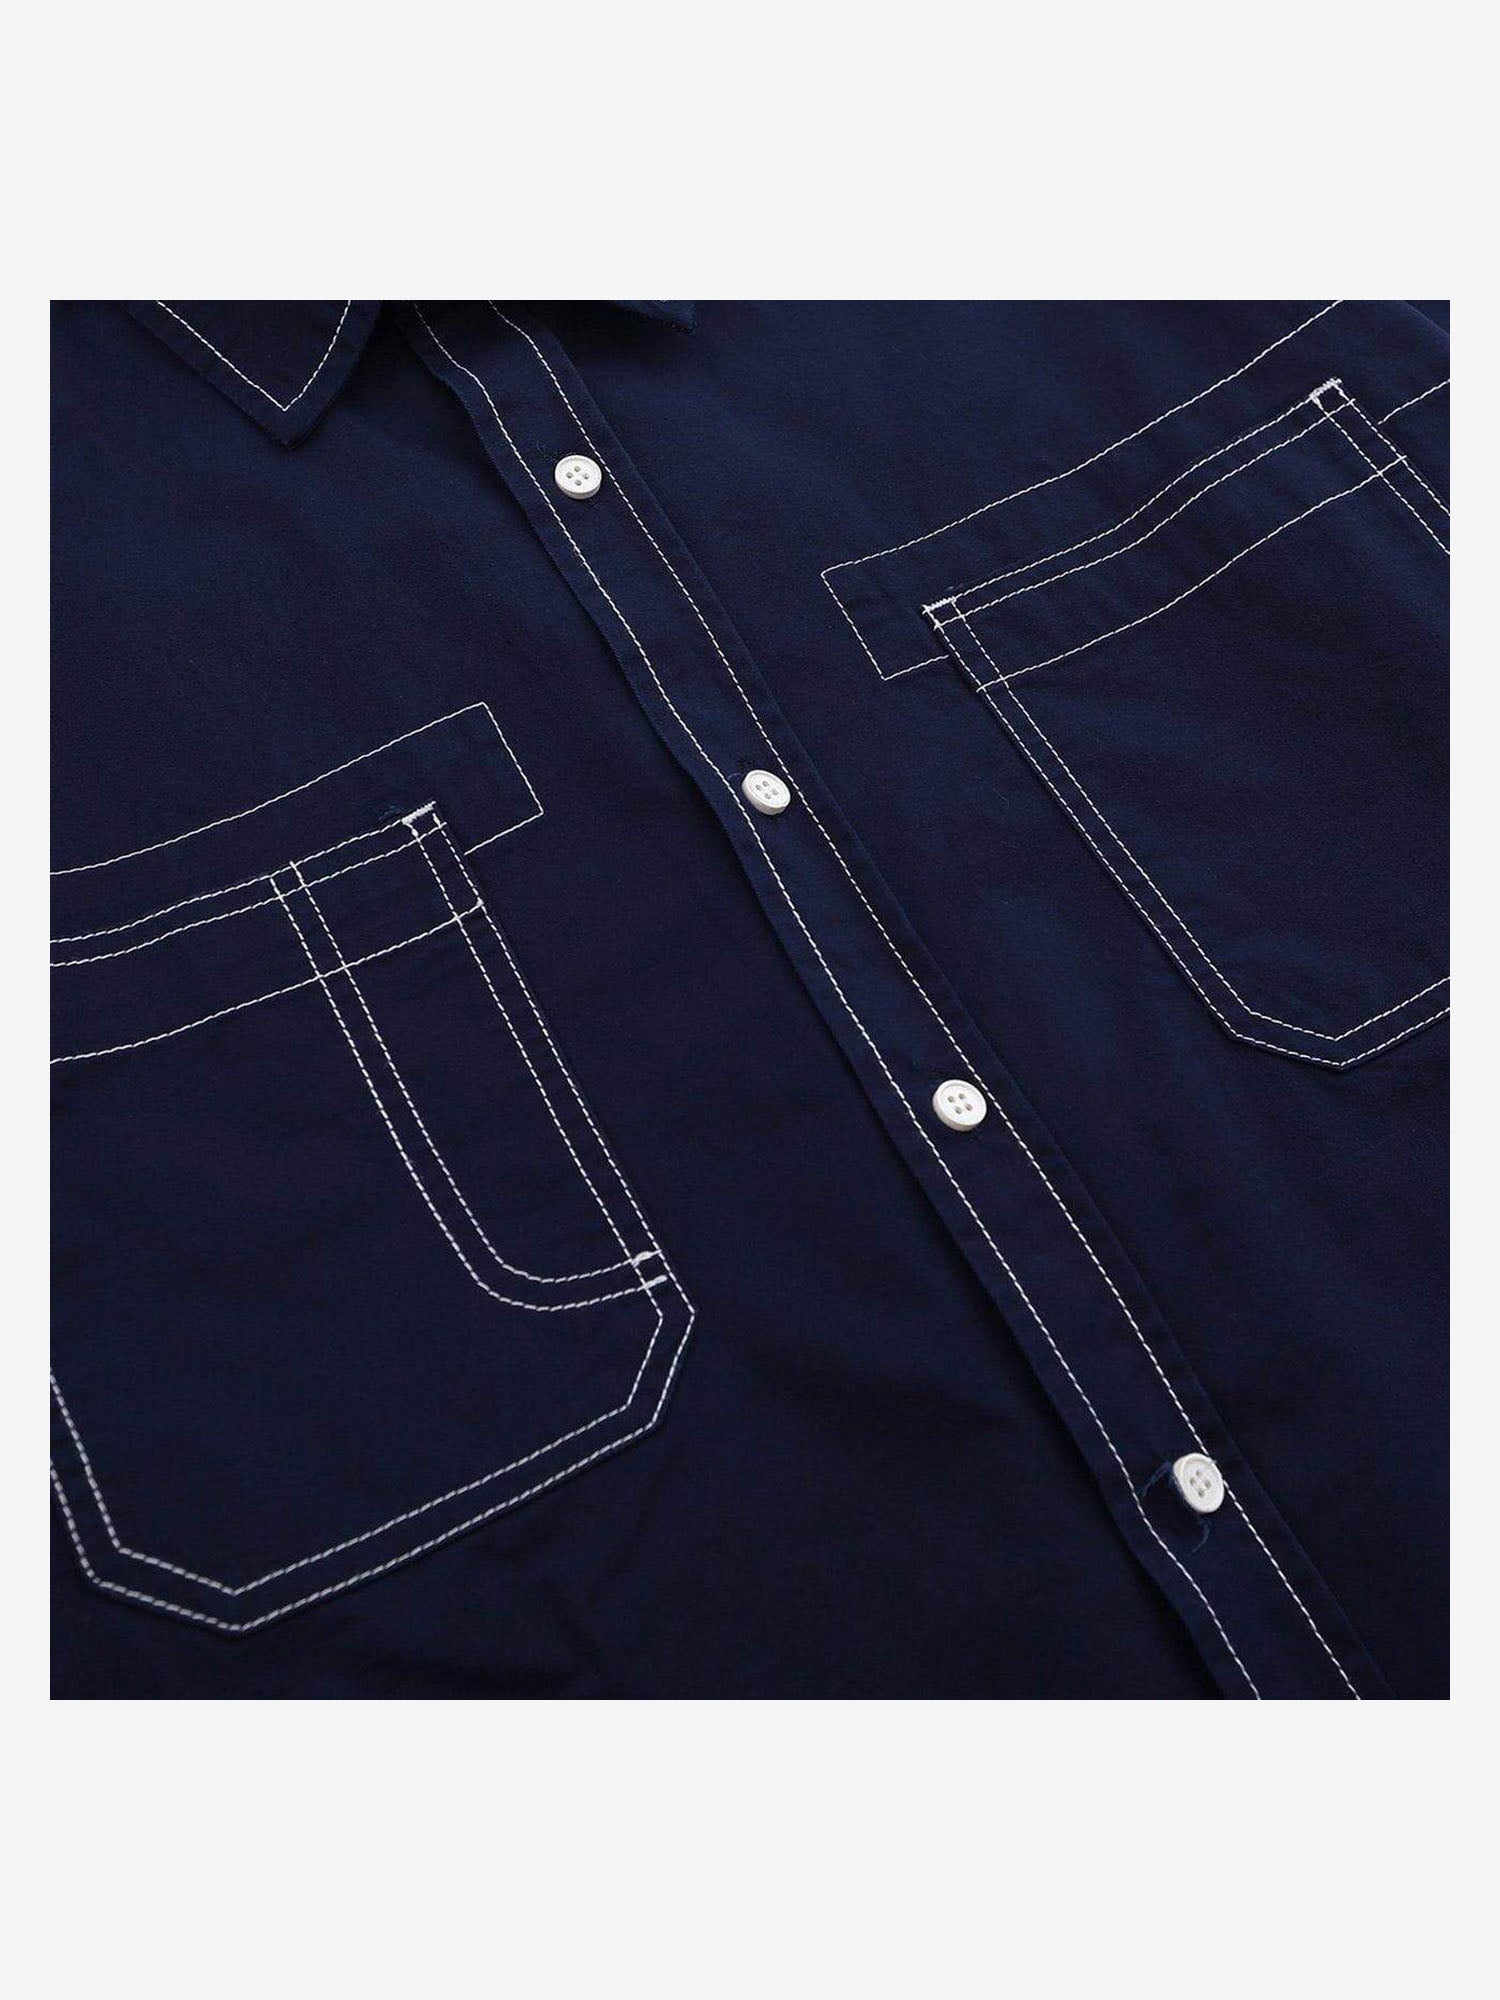 JUSTNOTAG Open Line Design Long Sleeve Shirt